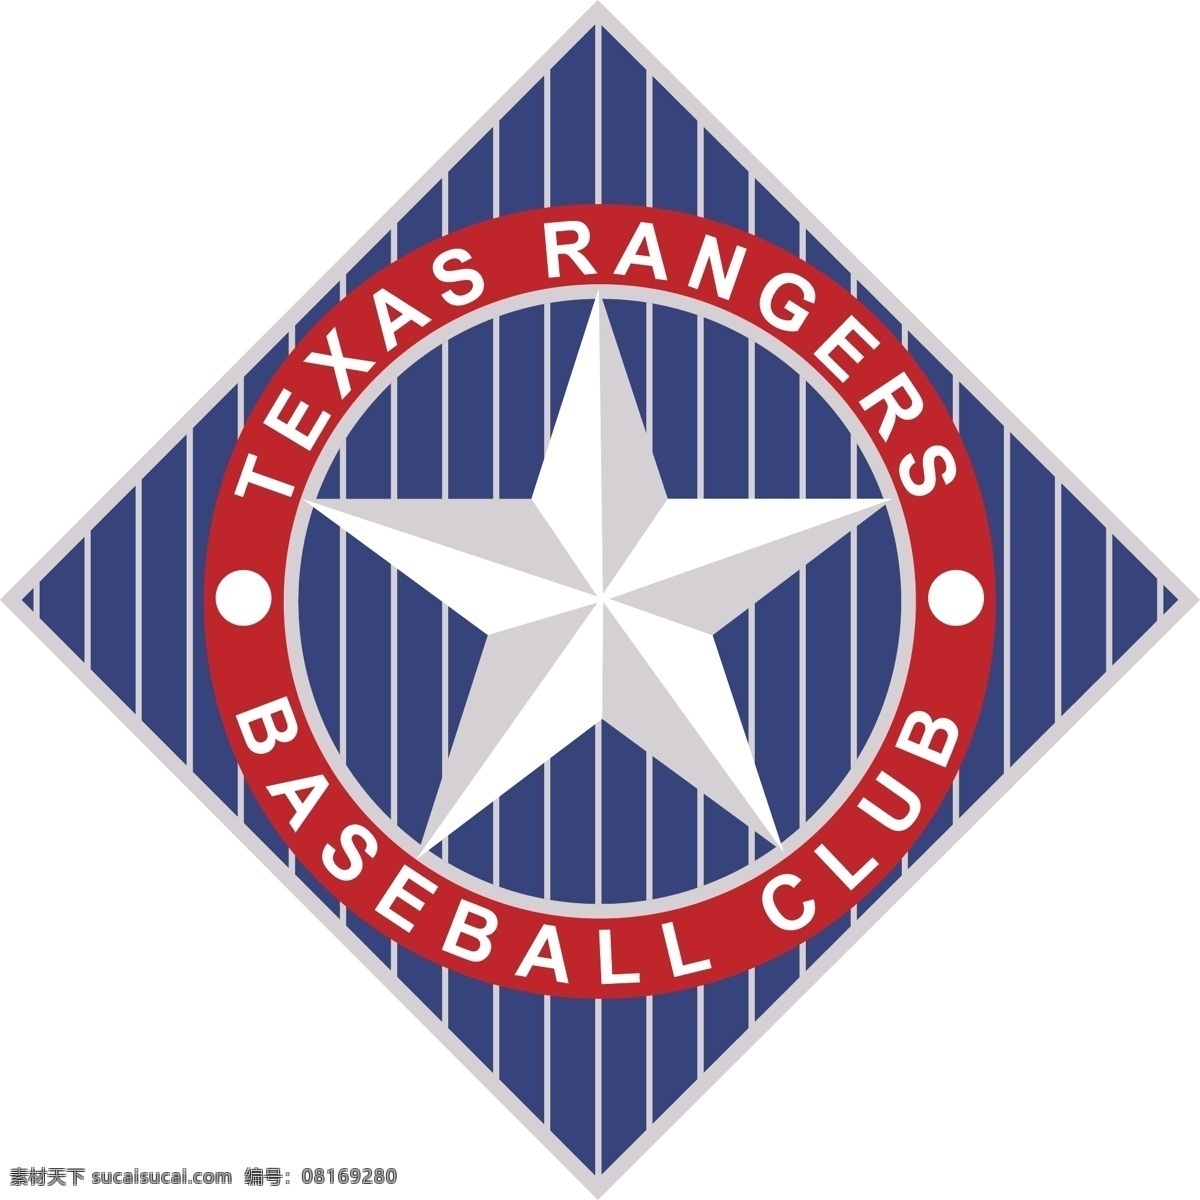 德克萨斯 流浪者 队 美国 职 棒 大联盟 棒球 俱乐部 自由 游 骑兵 标志 免费 psd源文件 logo设计